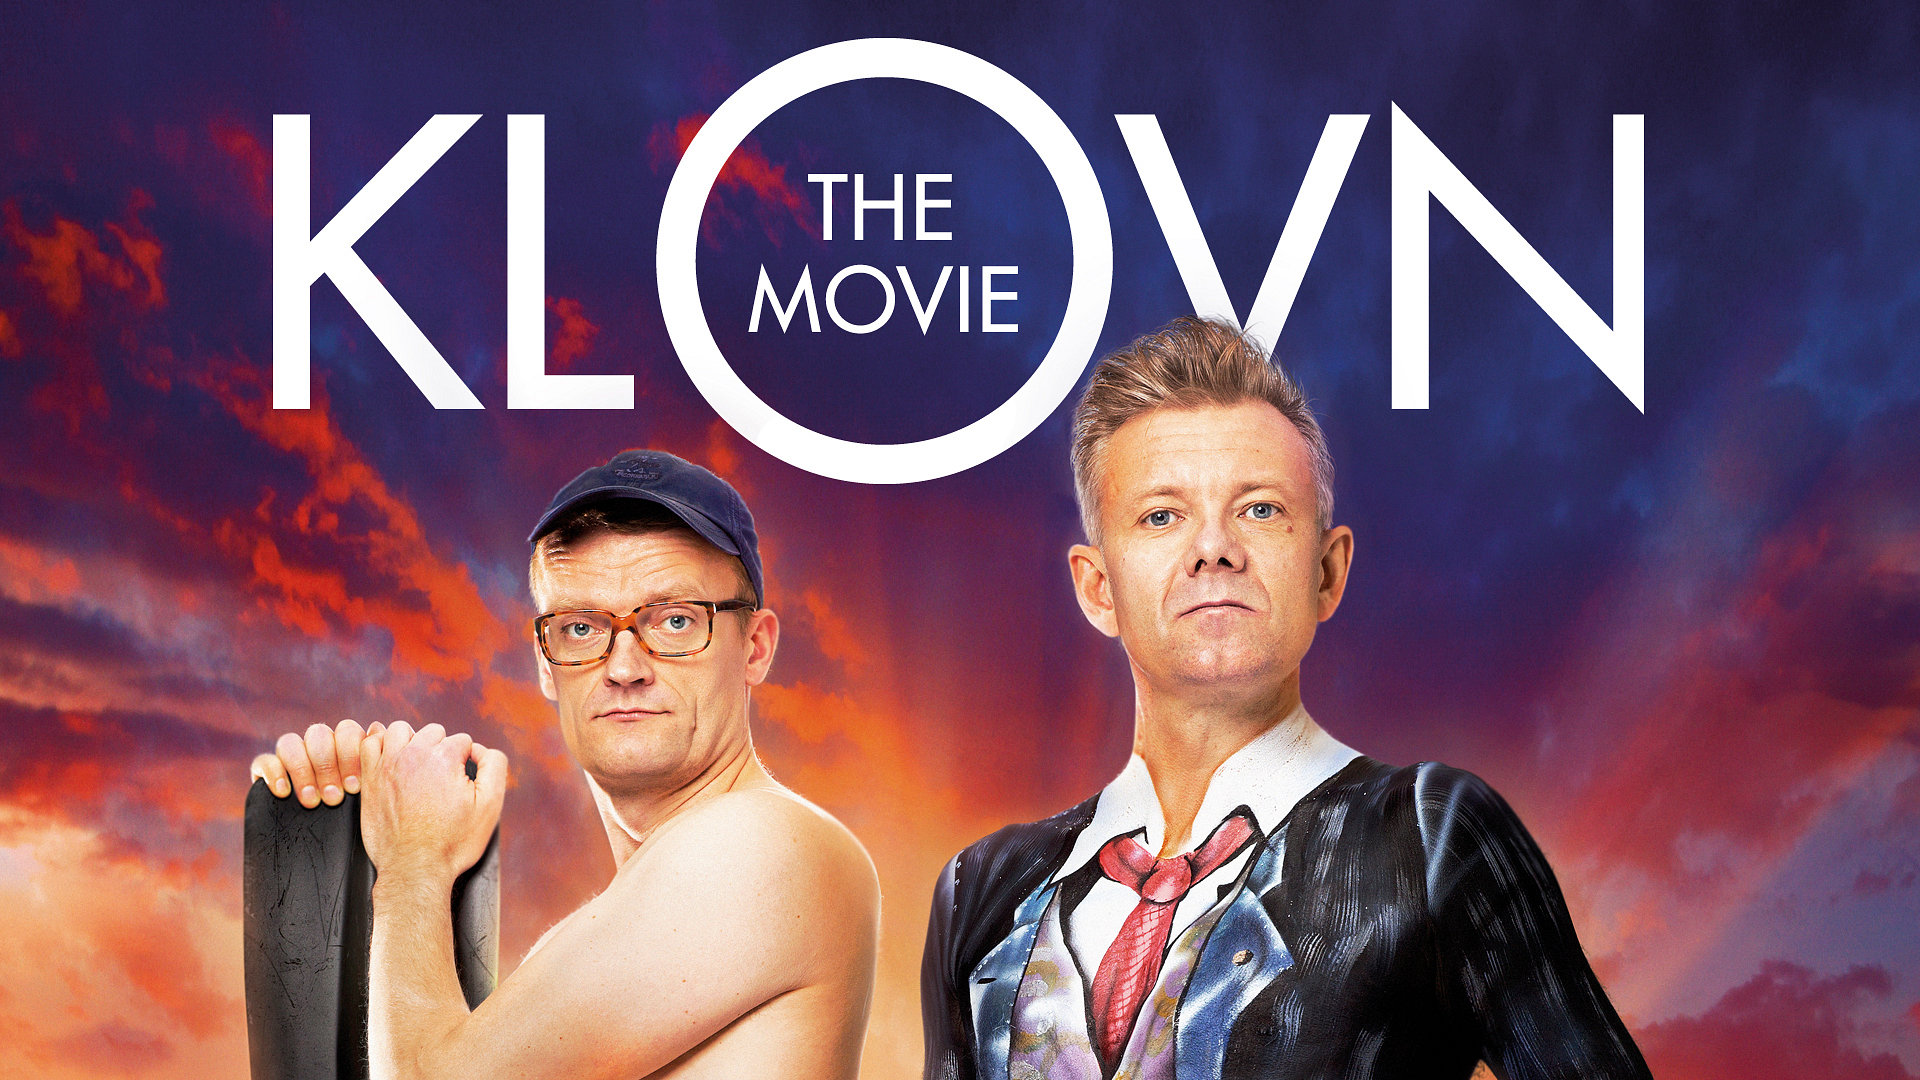 Klovn the Movie